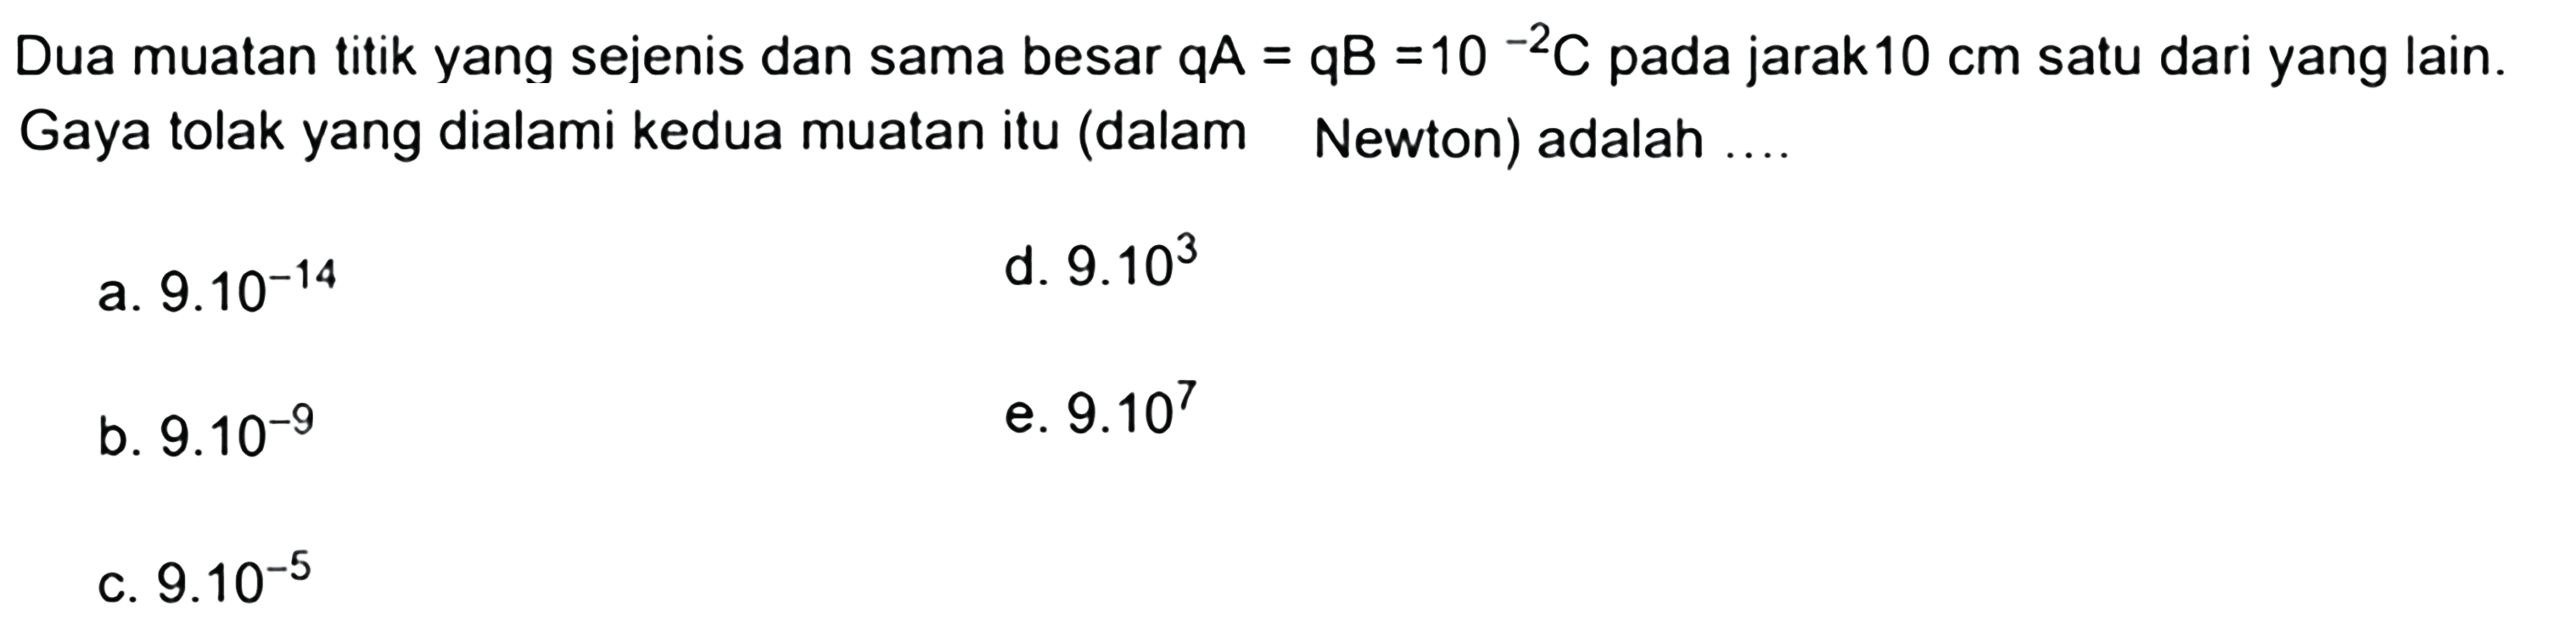 Dua muatan titik yang sejenis dan sama besar qA=qB=10^-2 C pada jarak 10 cm satu dari yang lain. Gaya tolak yang dialami kedua muatan itu (dalam Newton) adalah .... 